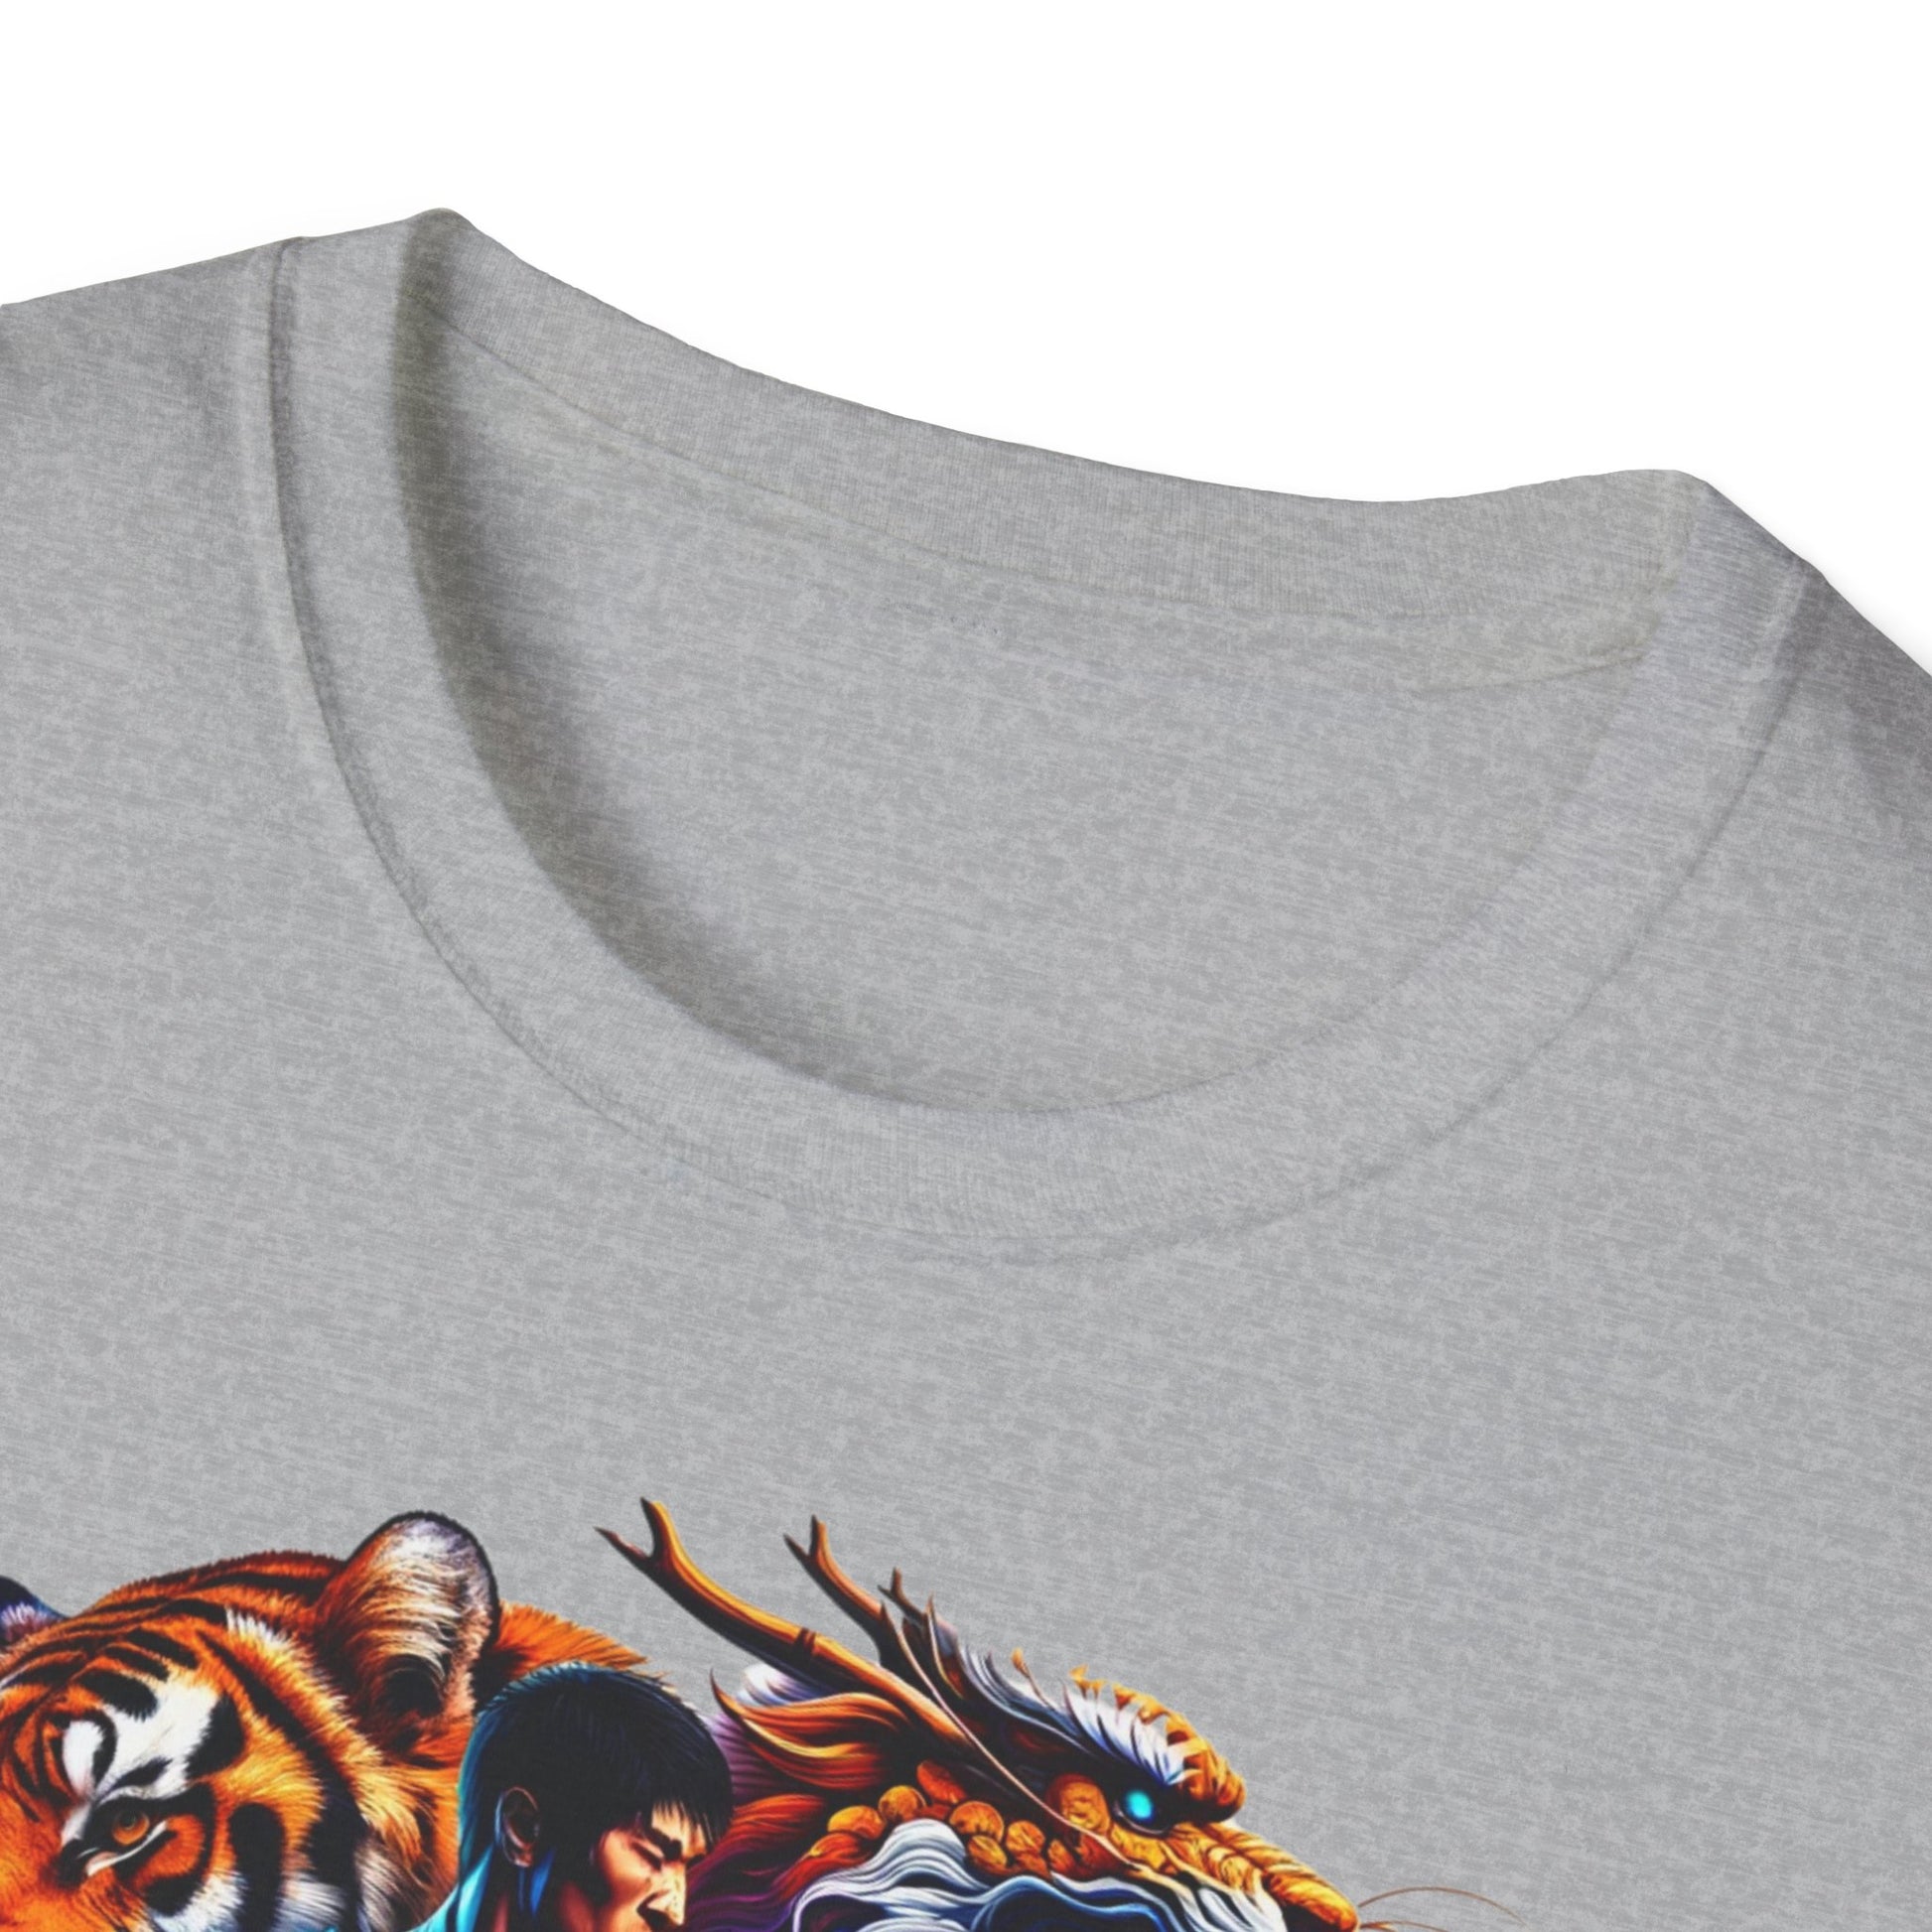 dragón camiseta del dragón camisetas exclusivas japonesas templo japonés camiseta del templo japonés camiseta de karate camisetas españolas tigre camiseta tigre camisetas únicas